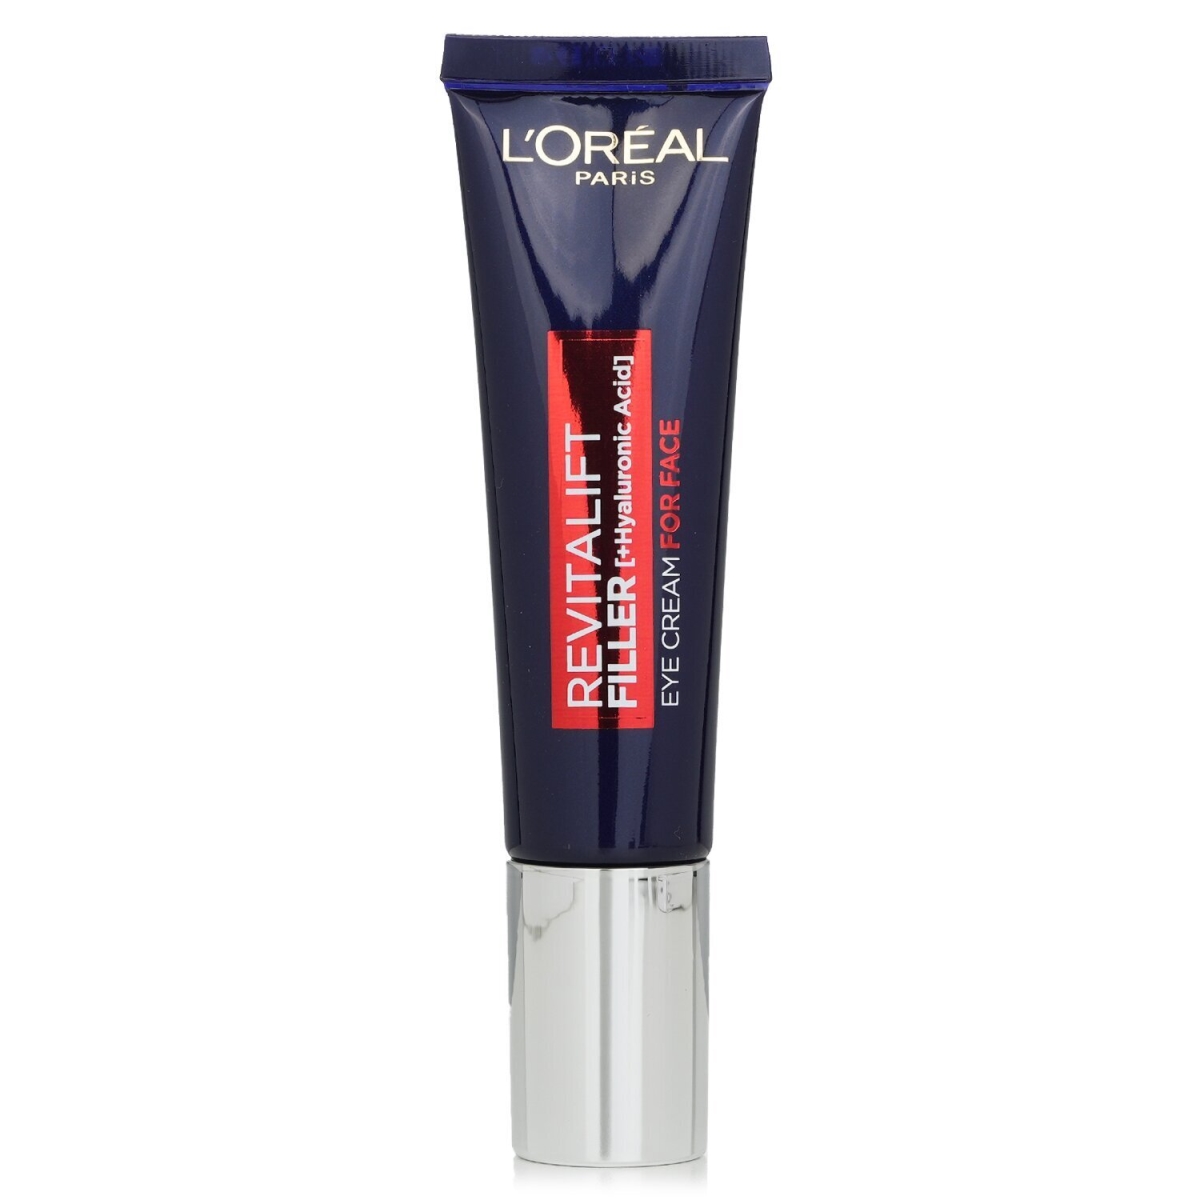 L'Oreal 300845 30 ml Revitalift Filler Eye Cream with Hyaluronic Acid for Face